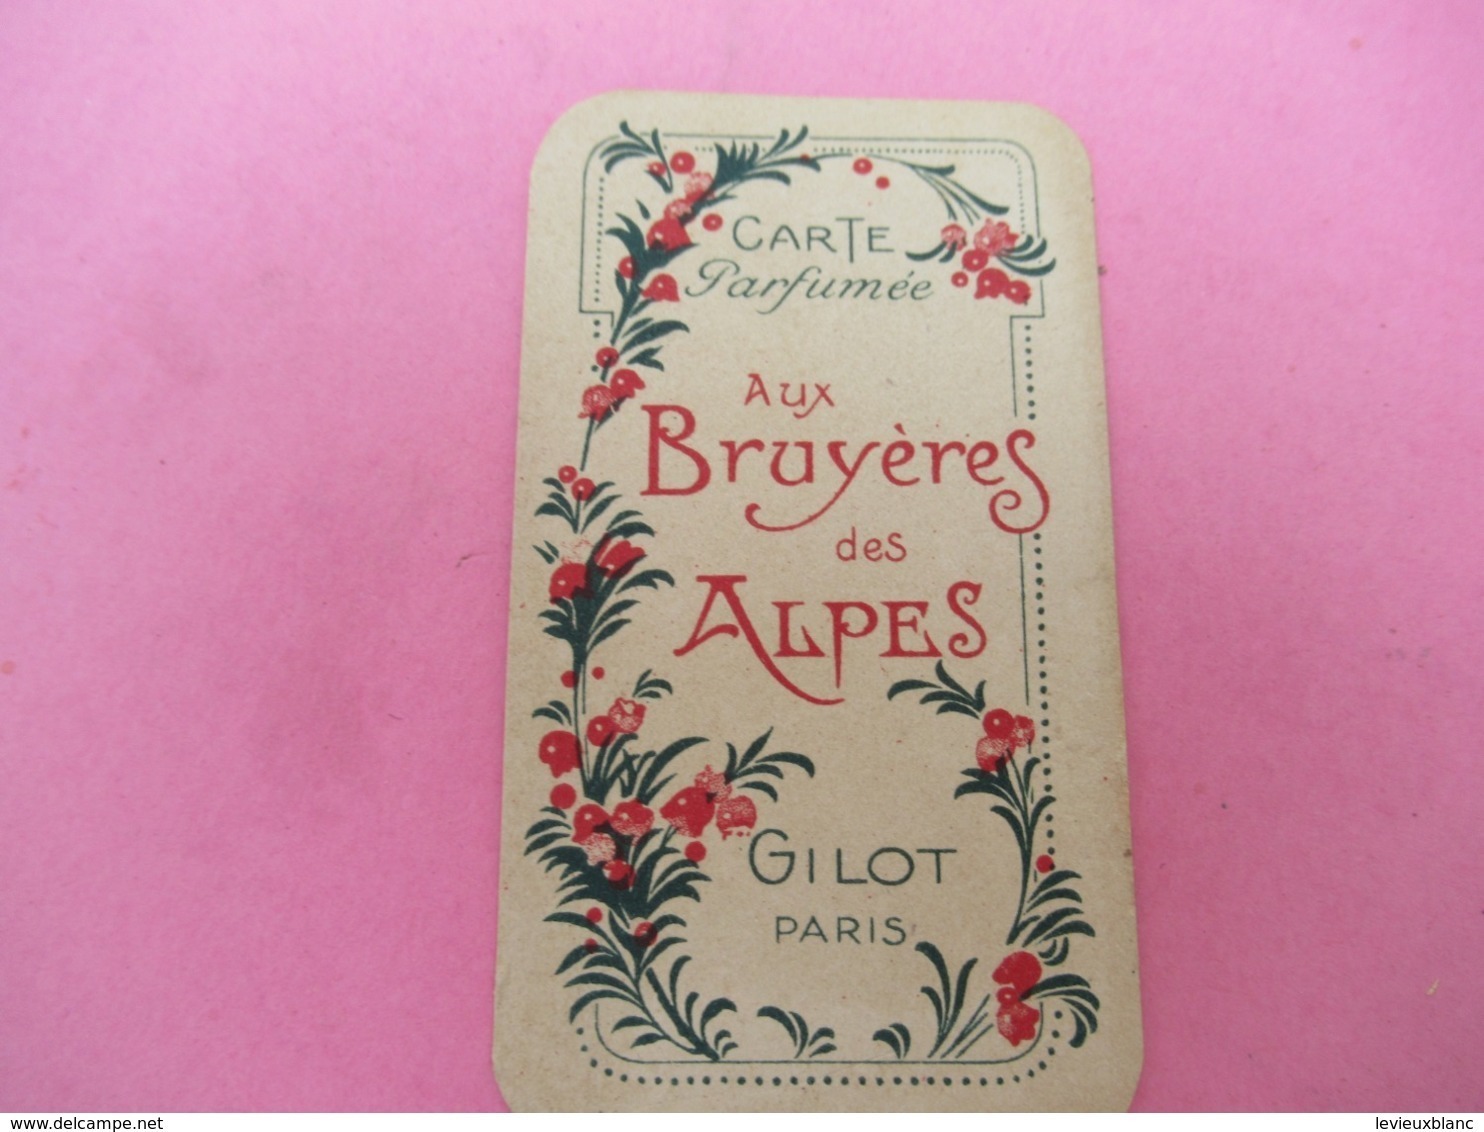 Carte Publicitaire Parfumée/Aux Bruyéres Des Alpes/ Gilot , Paris  /Vers 1920-1930   PARF198quatro - Anciennes (jusque 1960)